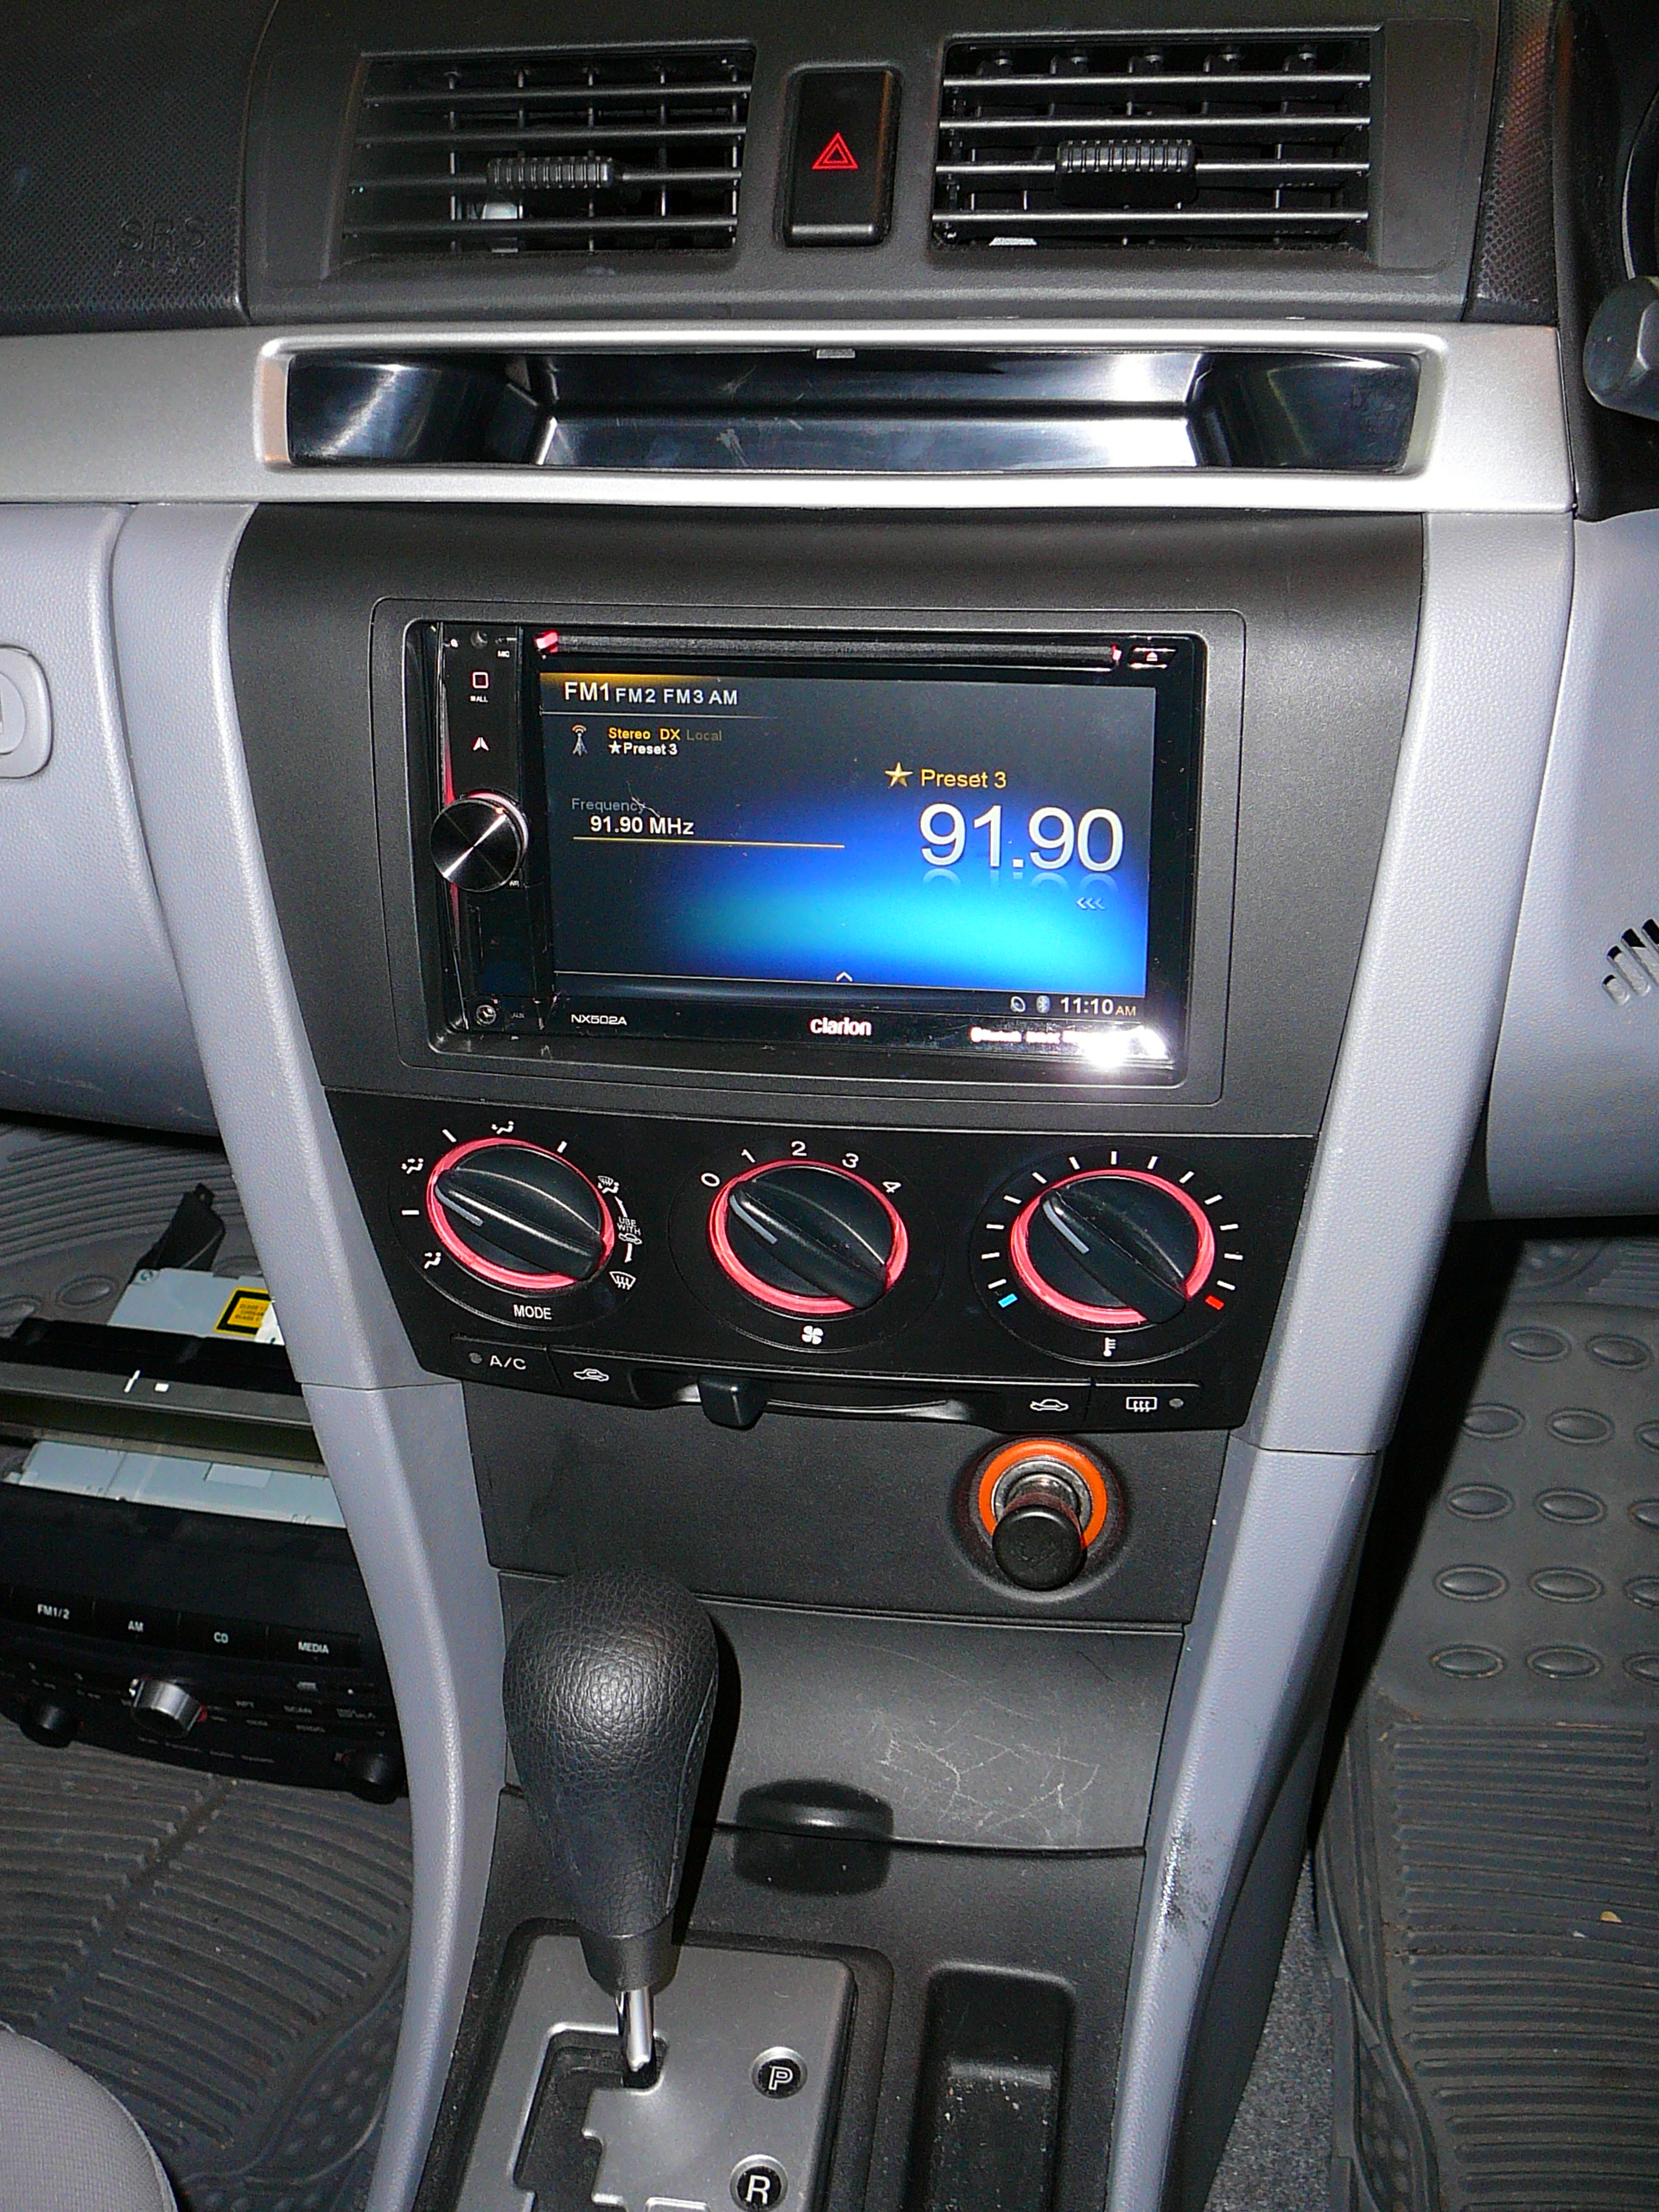 Mazda 3 2006, Clarion GPS Navigation System Installation